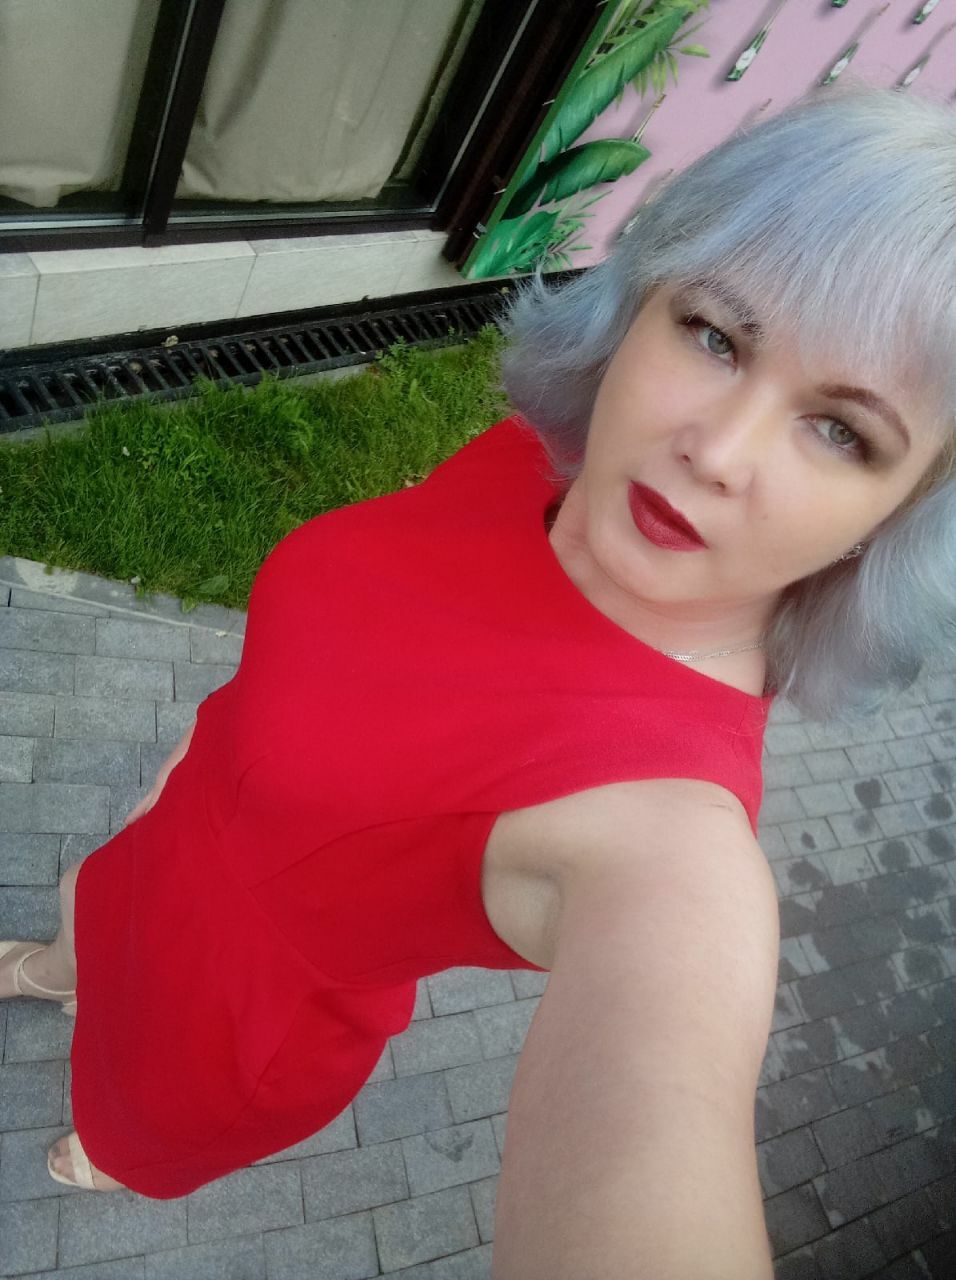 Таллиннского трансгендера ждет высылка в Россию: там ему грозит мобилизация